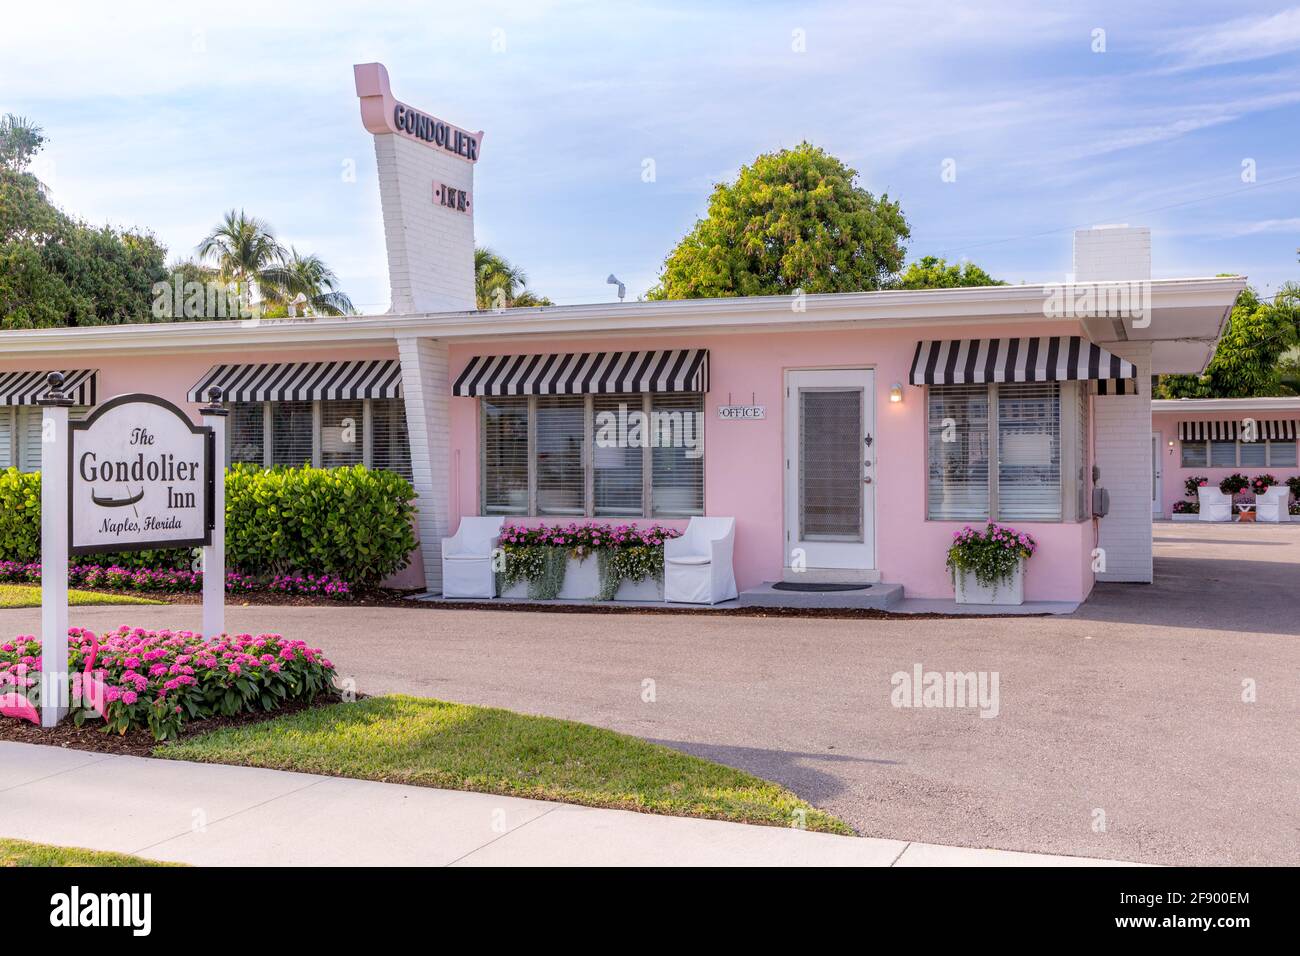 Le gondolier Inn - b. 1958, un motel haut de gamme classique de style années 50, Naples, Floride, États-Unis Banque D'Images